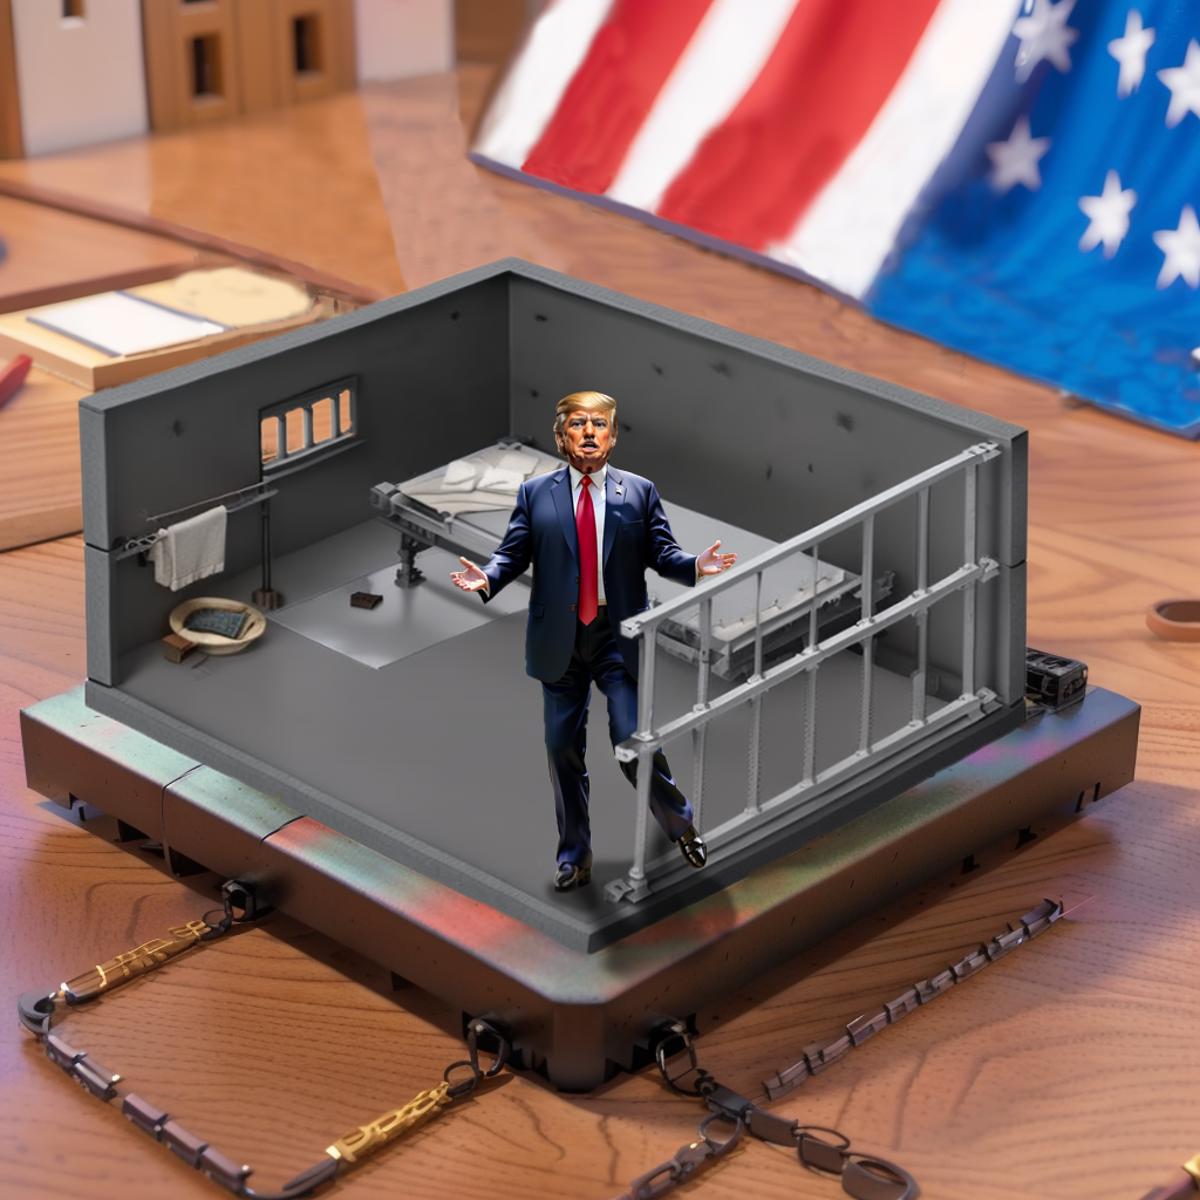 Donald Trump image by nytro